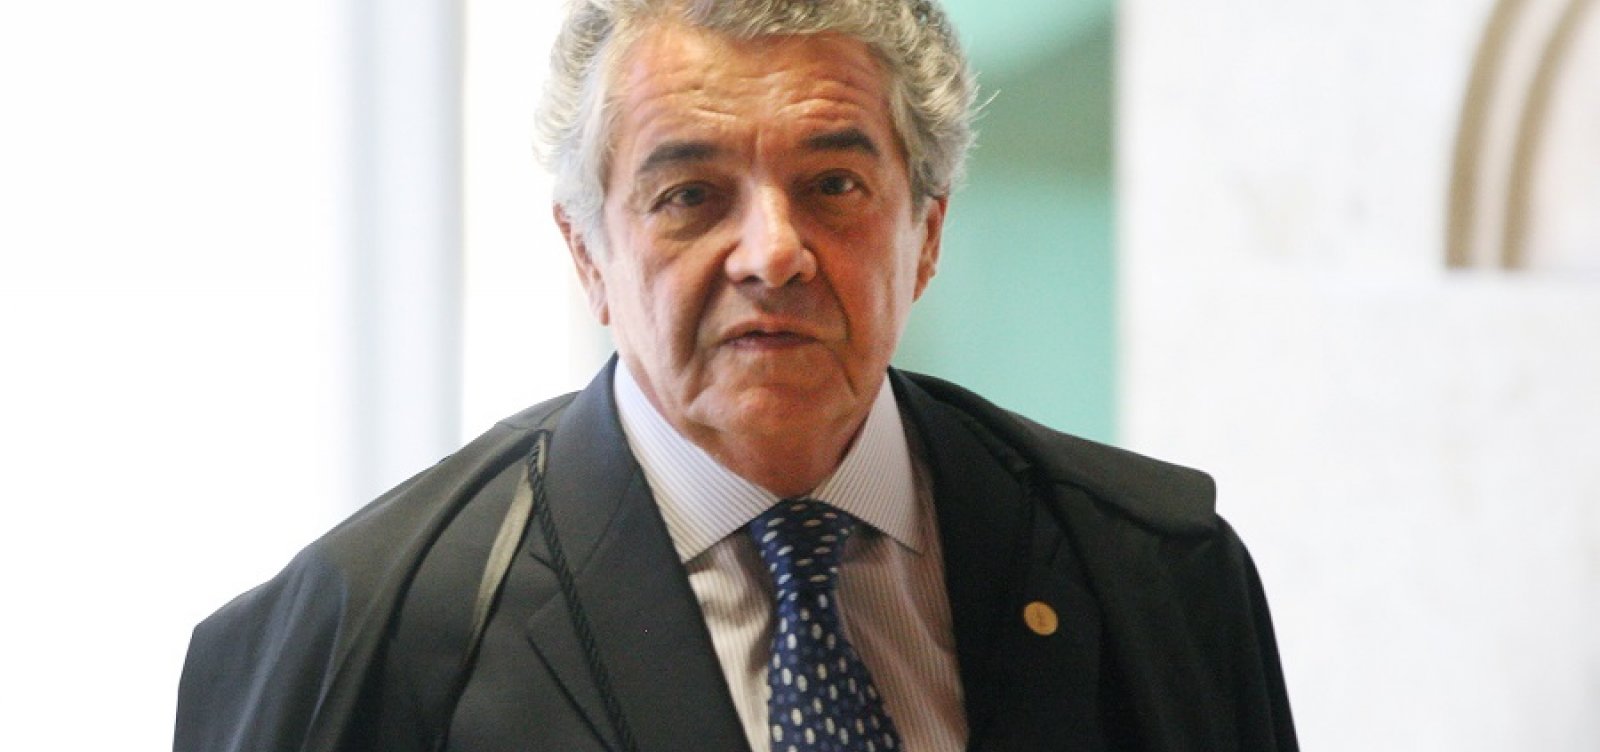 Marco Aurélio diz que tem remetido ao lixo reclamações como as de Flávio Bolsonaro